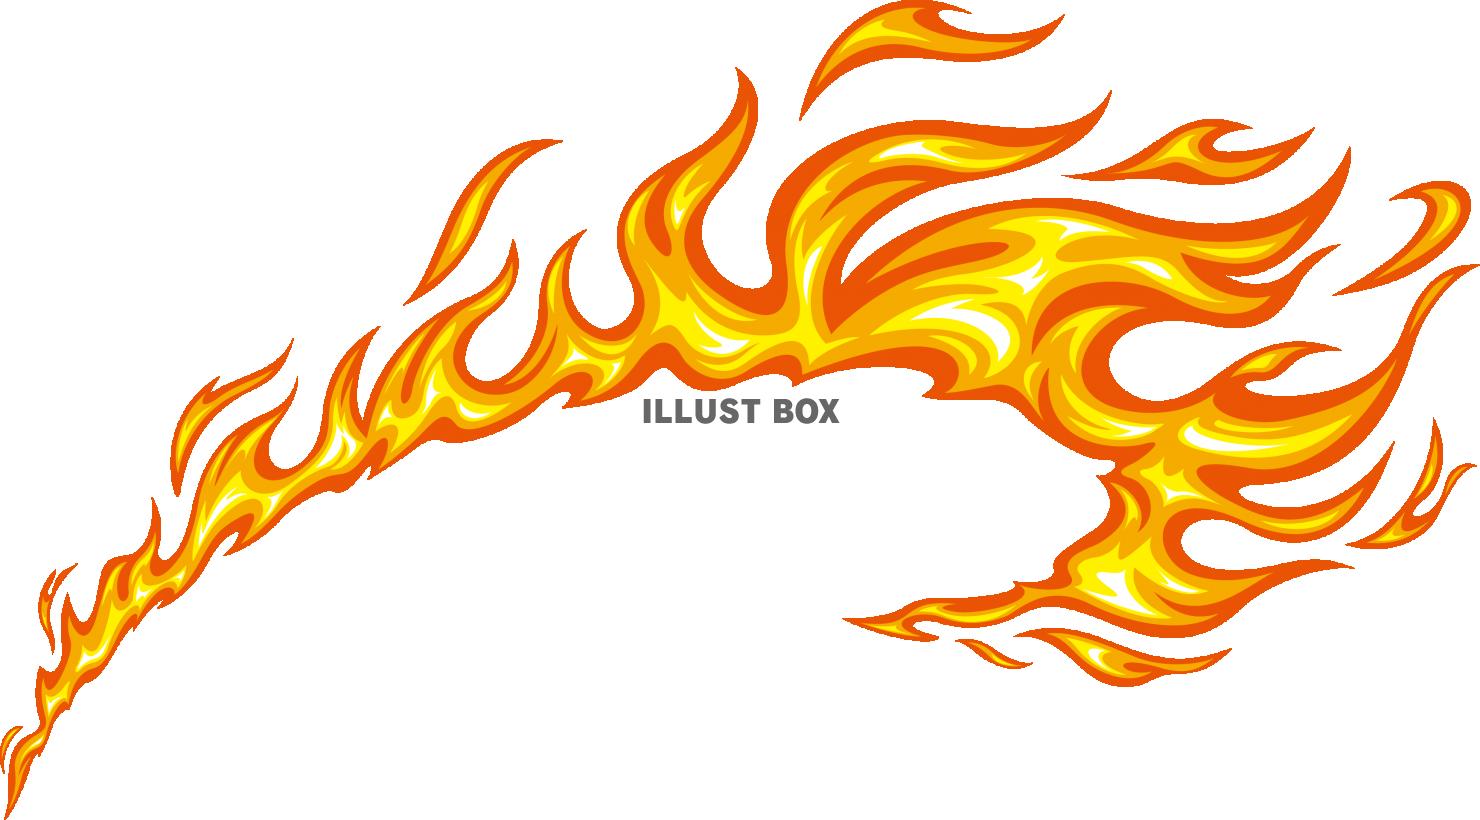 炎イラスト - 燃え盛る灼熱イメージの火の無料素材 - チコデザ